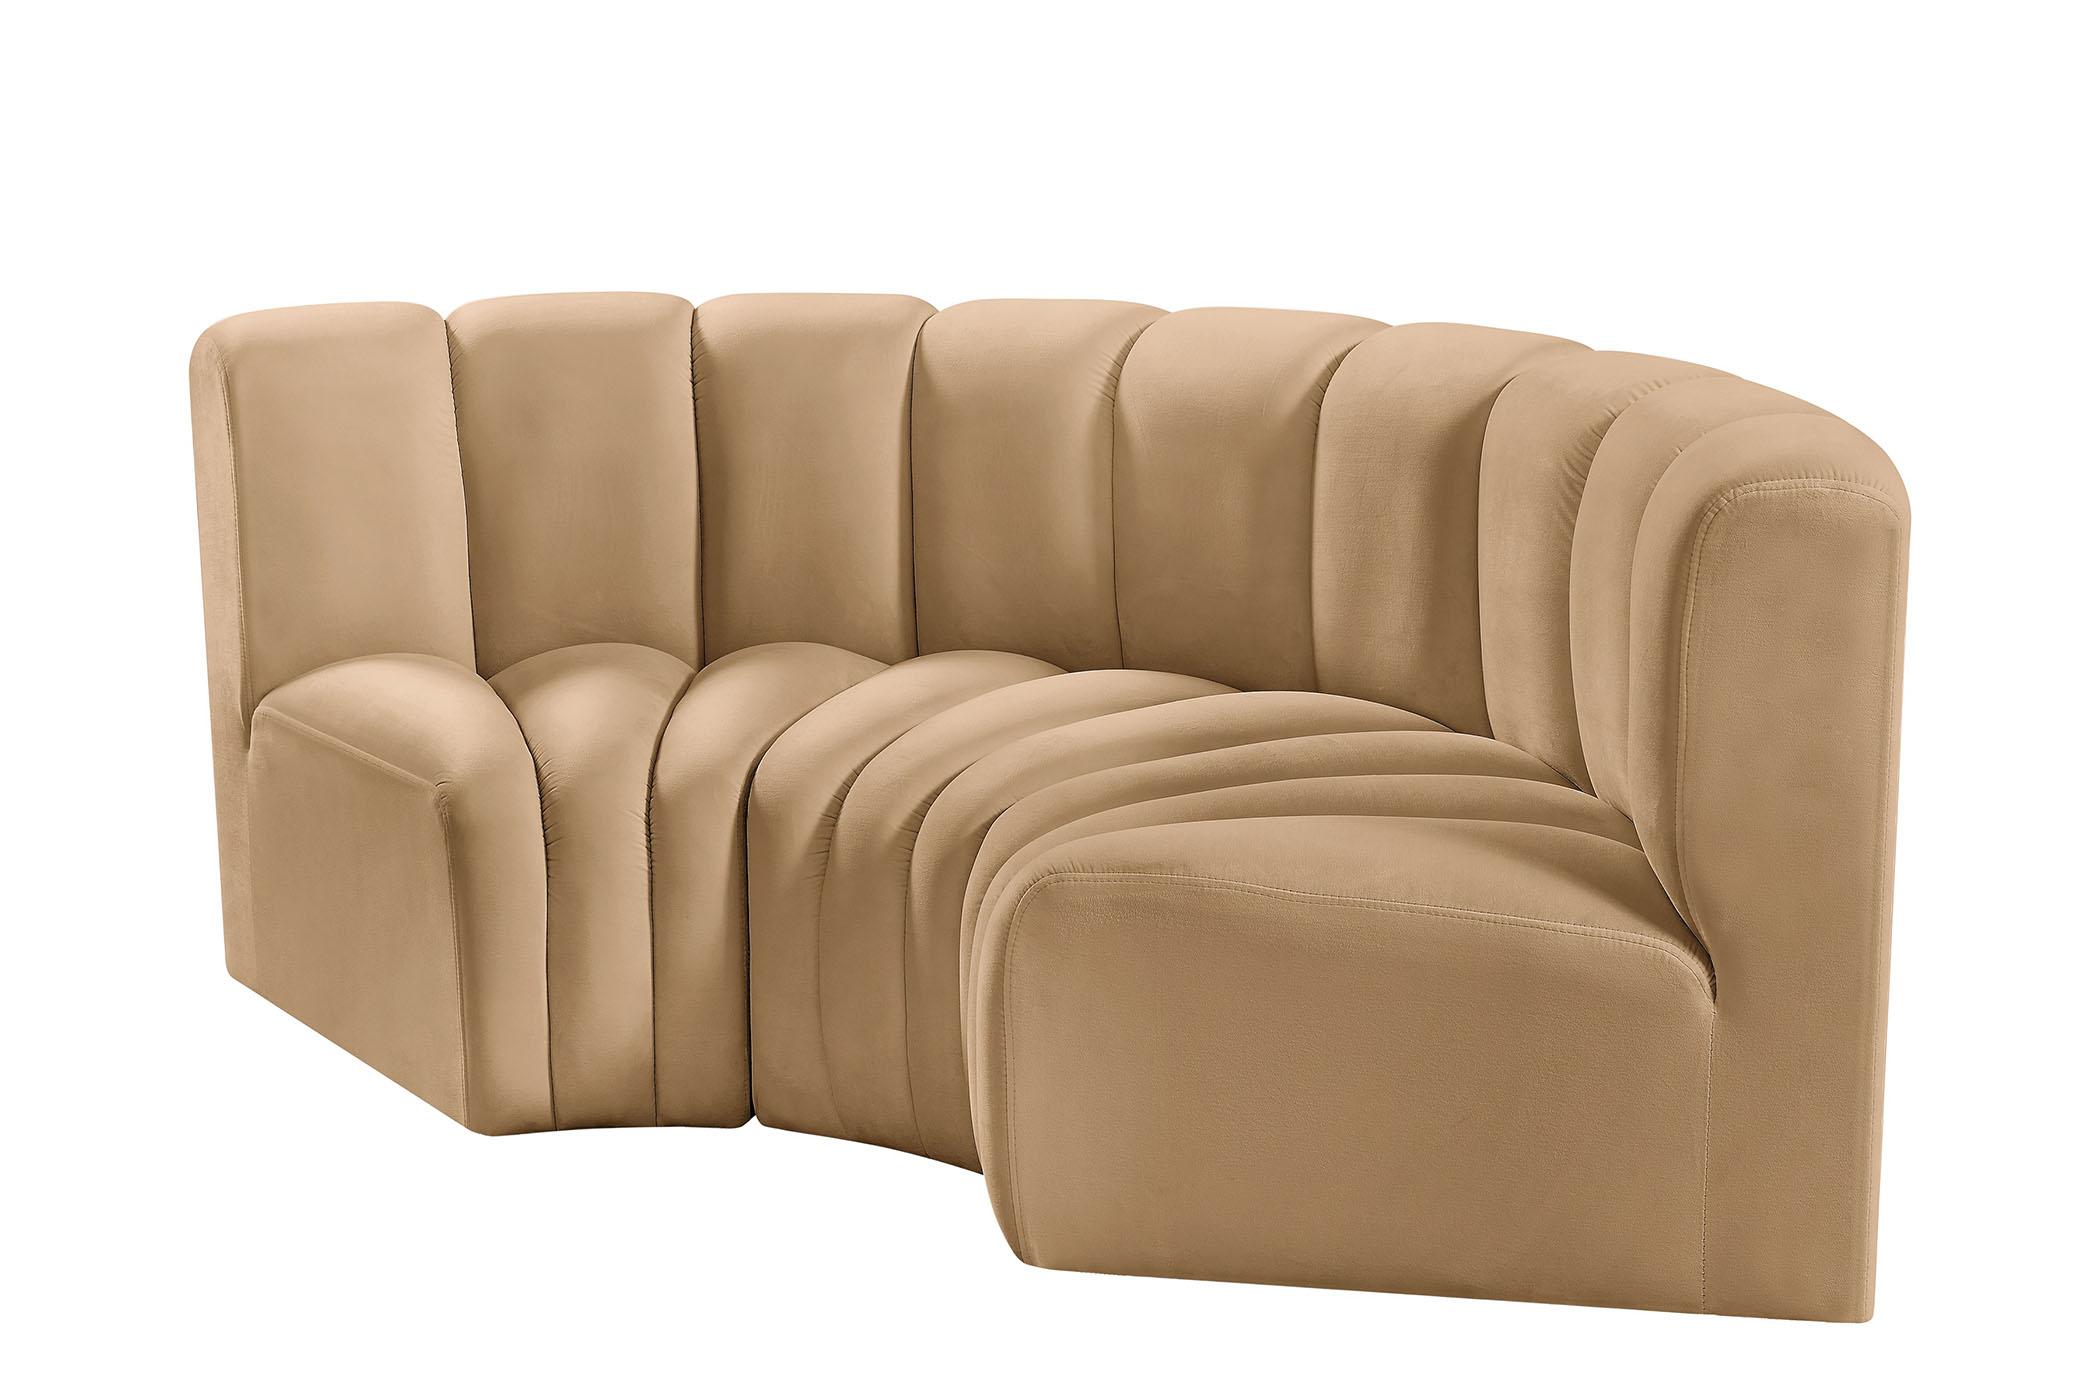 

    
103Camel-S3C Meridian Furniture Modular Sectional Sofa
